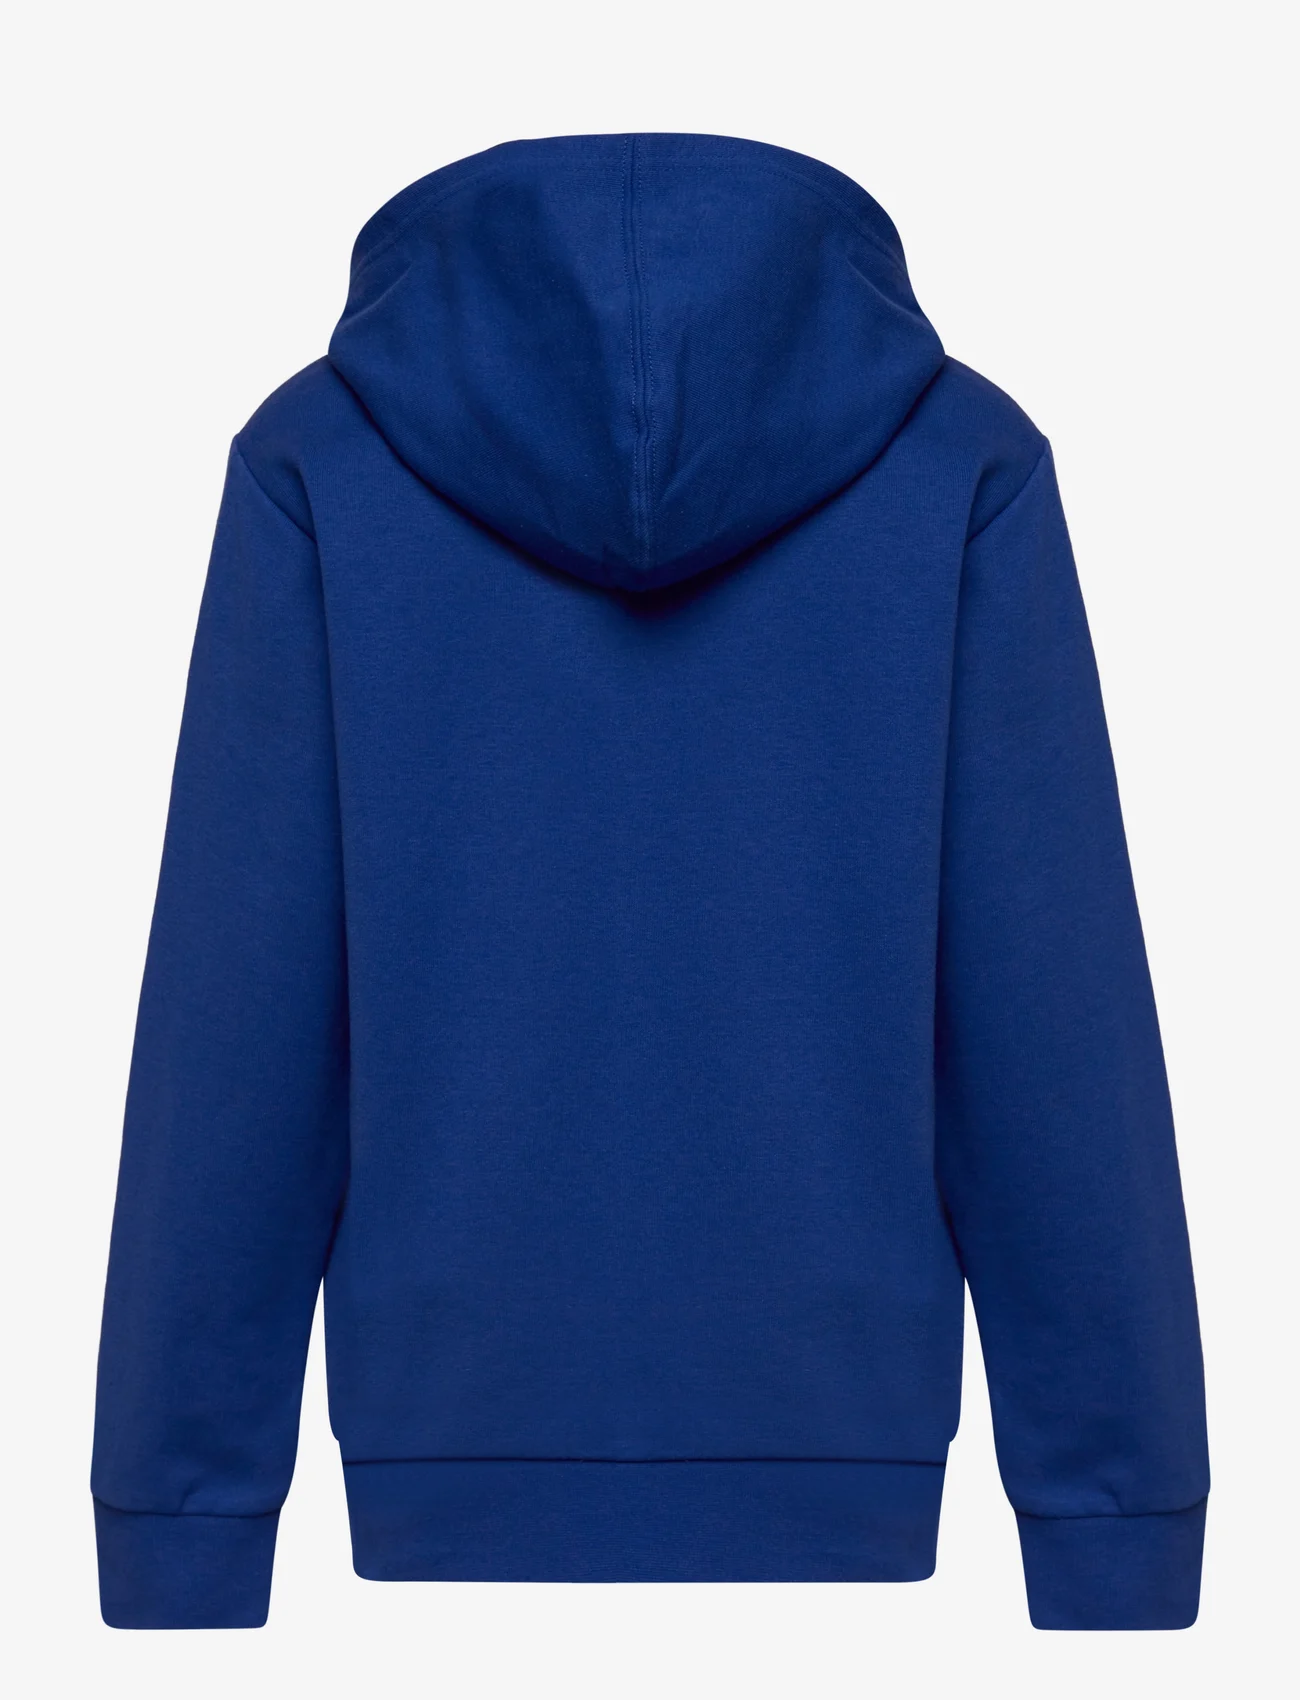 Champion - Hooded Sweatshirt - hættetrøjer - mazarine blue - 1